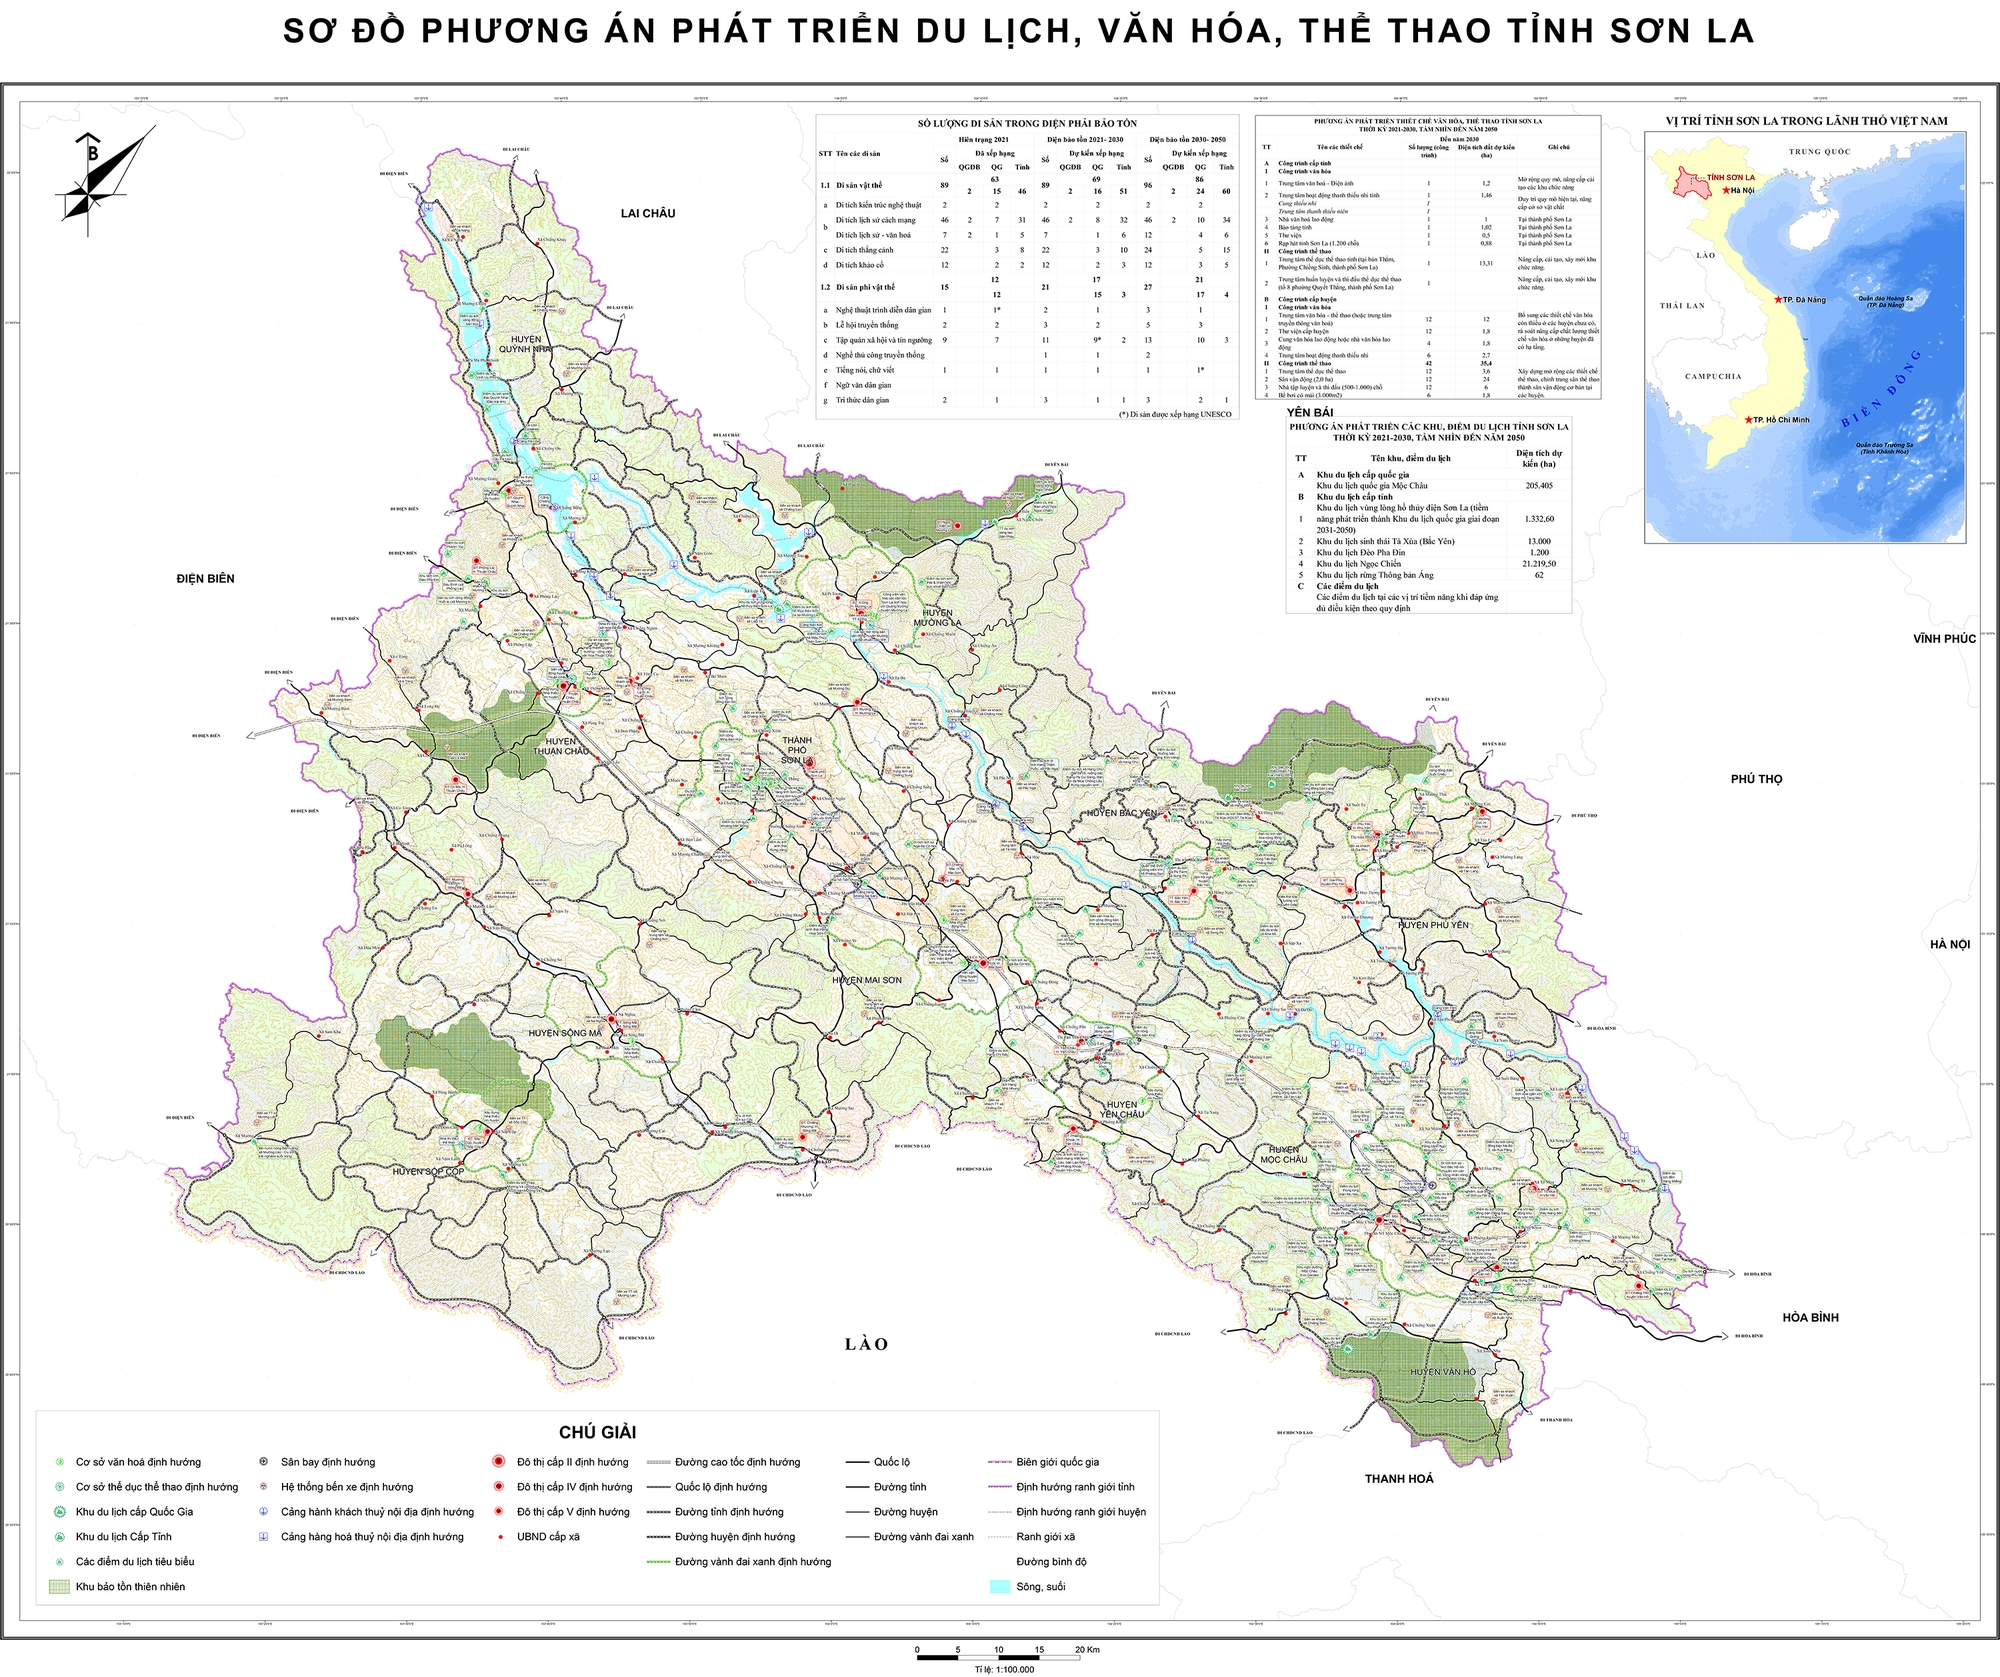 Sơn La - Trọng điểm du lịch của vùng biên giới Việt - Lào và vùng trung du, miền núi phía Bắc - Ảnh 1.